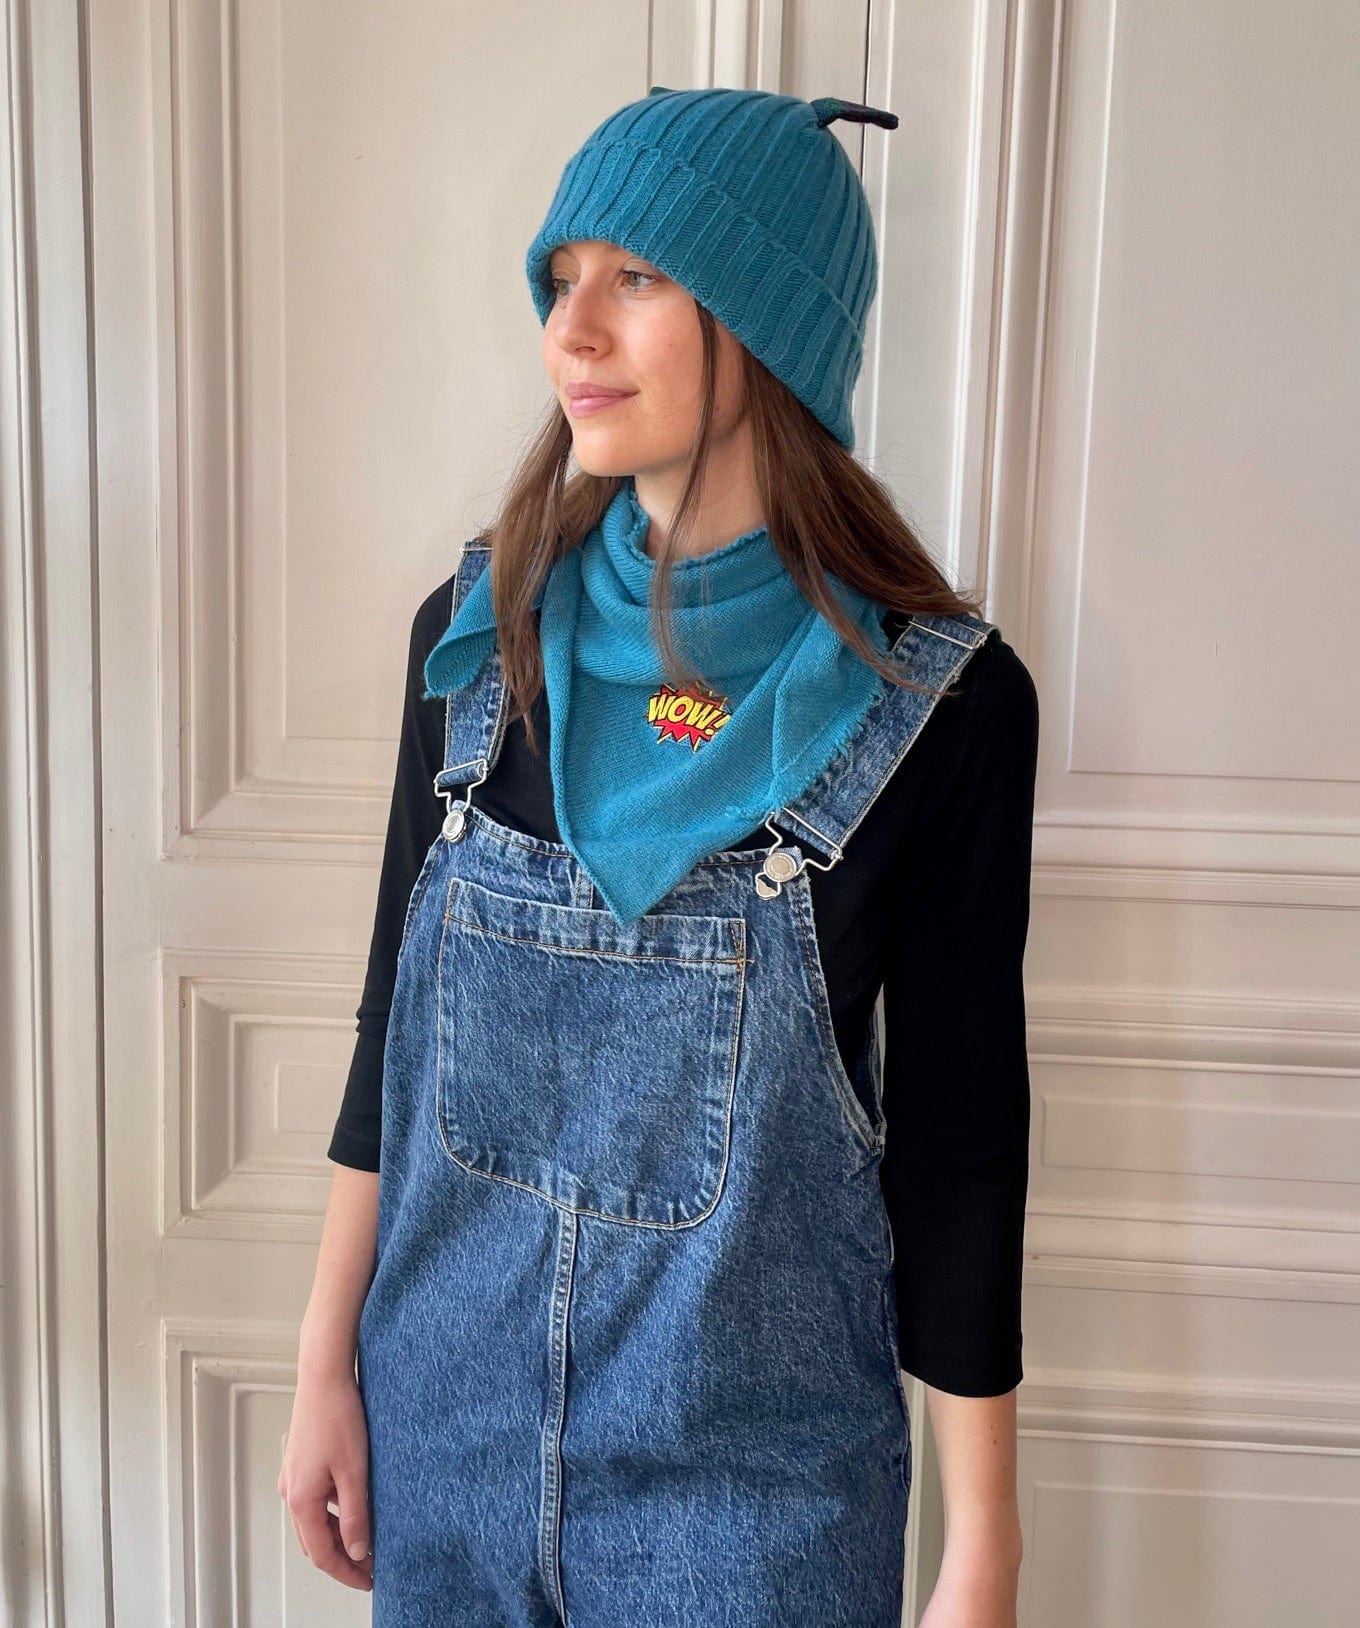 Triangle frangé bleu schtroumpf avec patch Wow tricoté en France 100% cachemire maille serrée